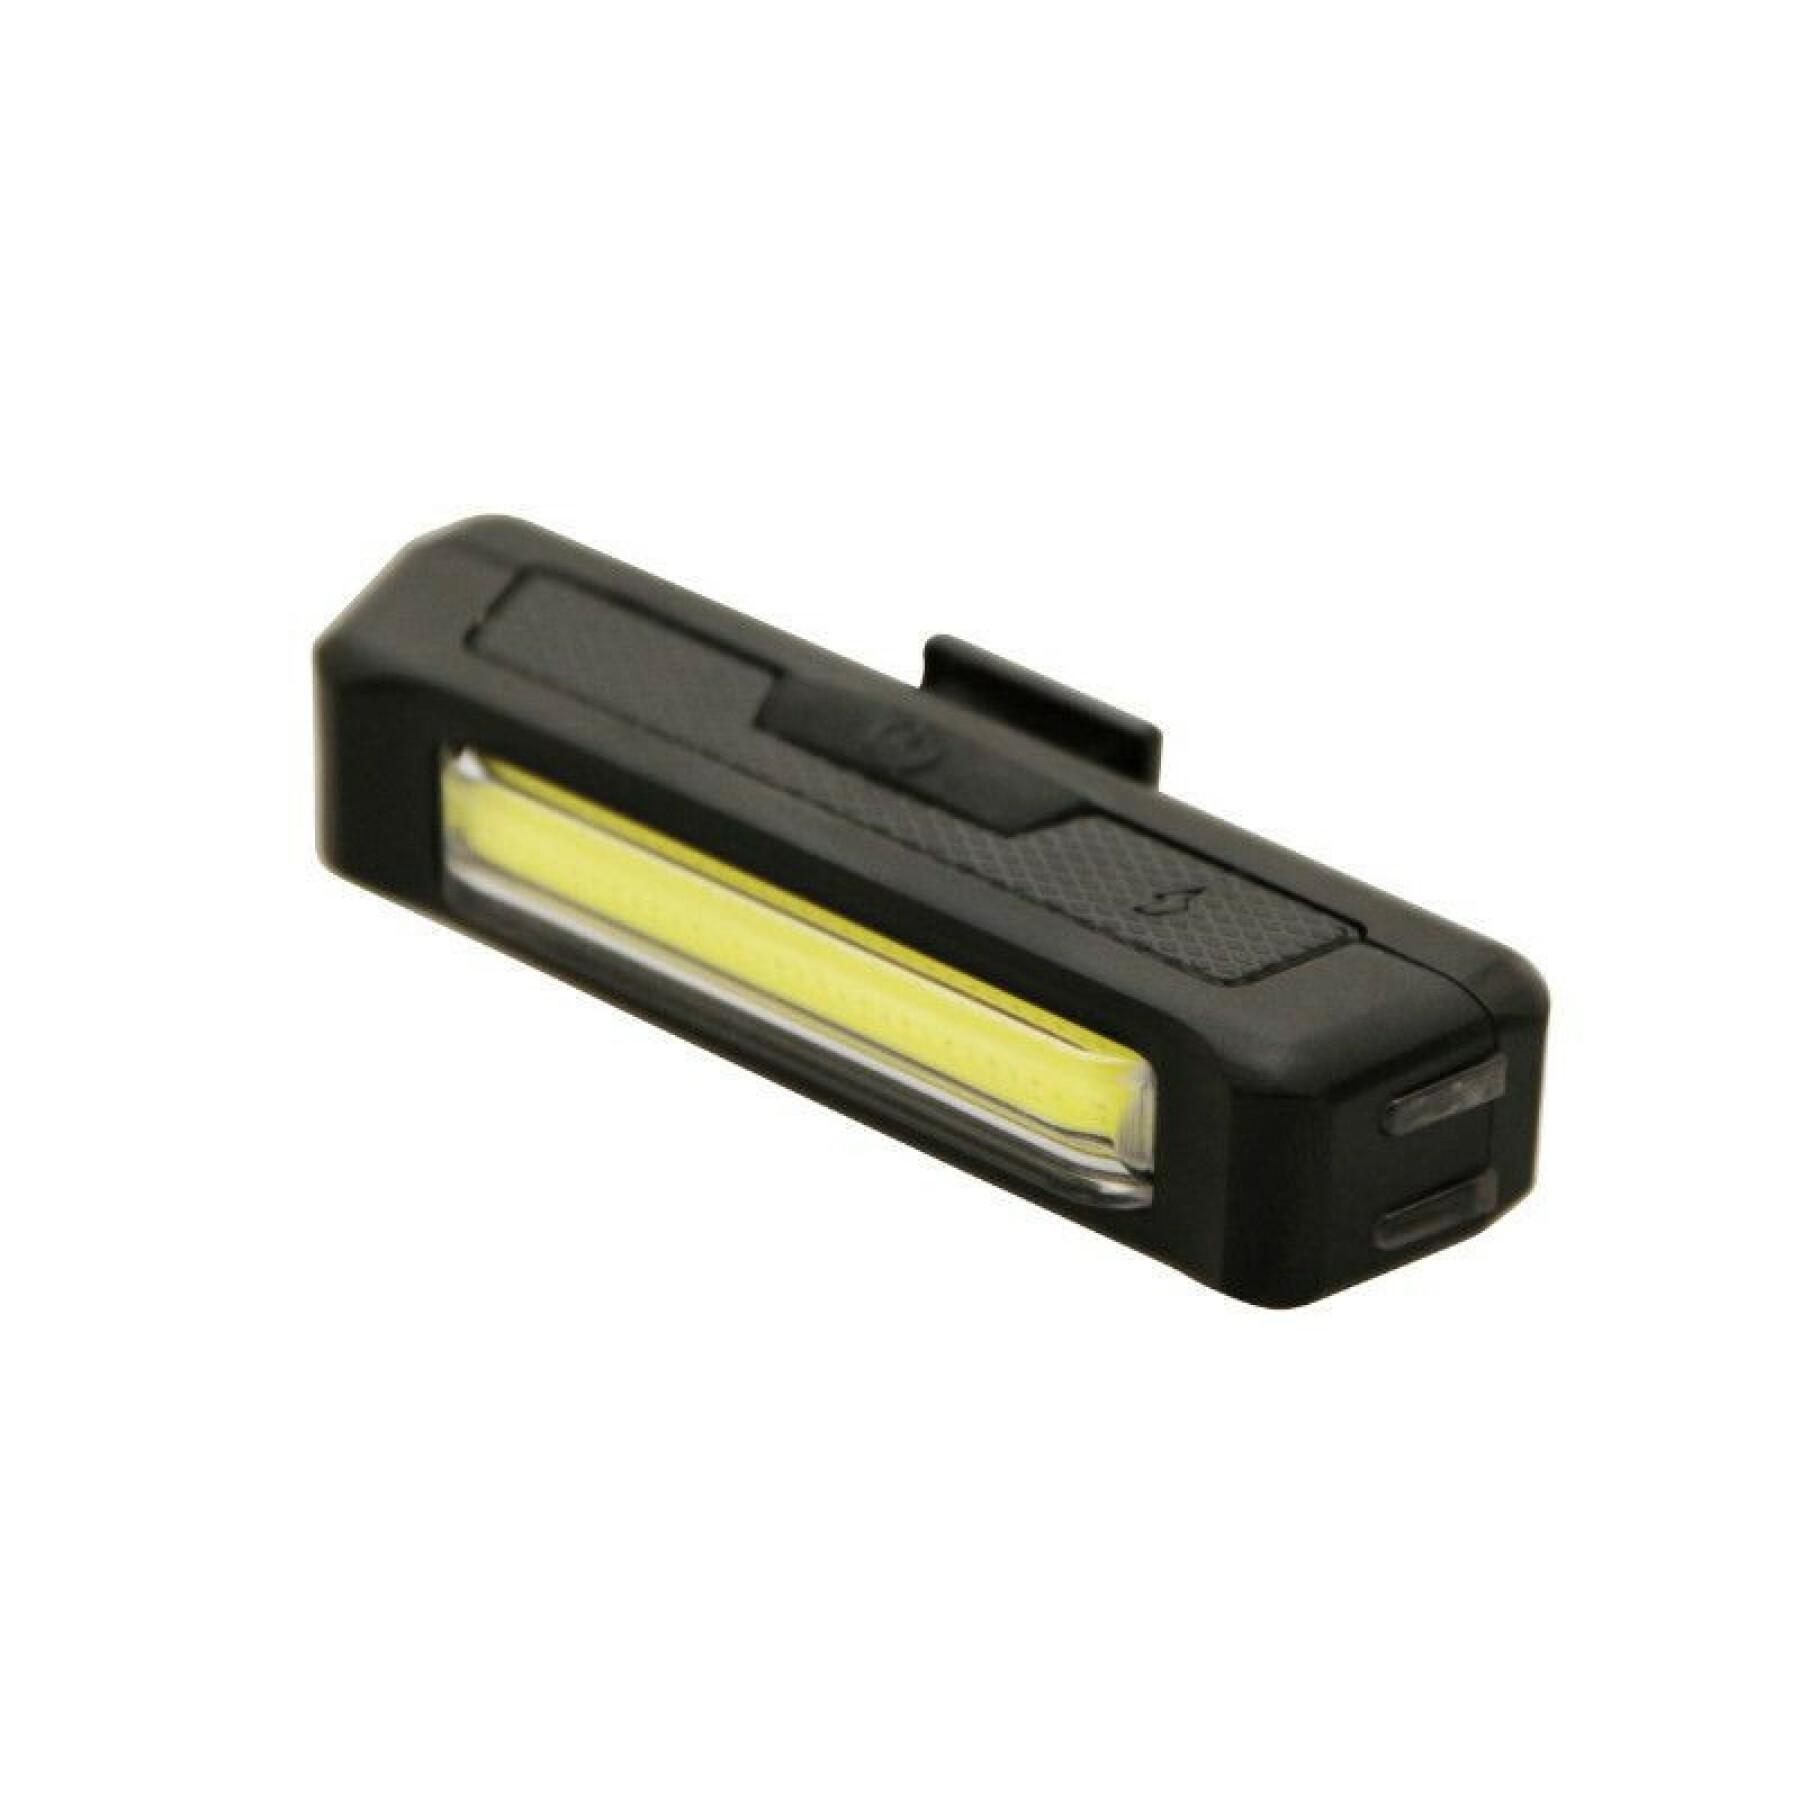 Éclairage vélo - trottinette USB avant ou arrière sur cintre (fonctions fixe, sos et clignotant) -non homologue Newton Cob leds 120 lumens